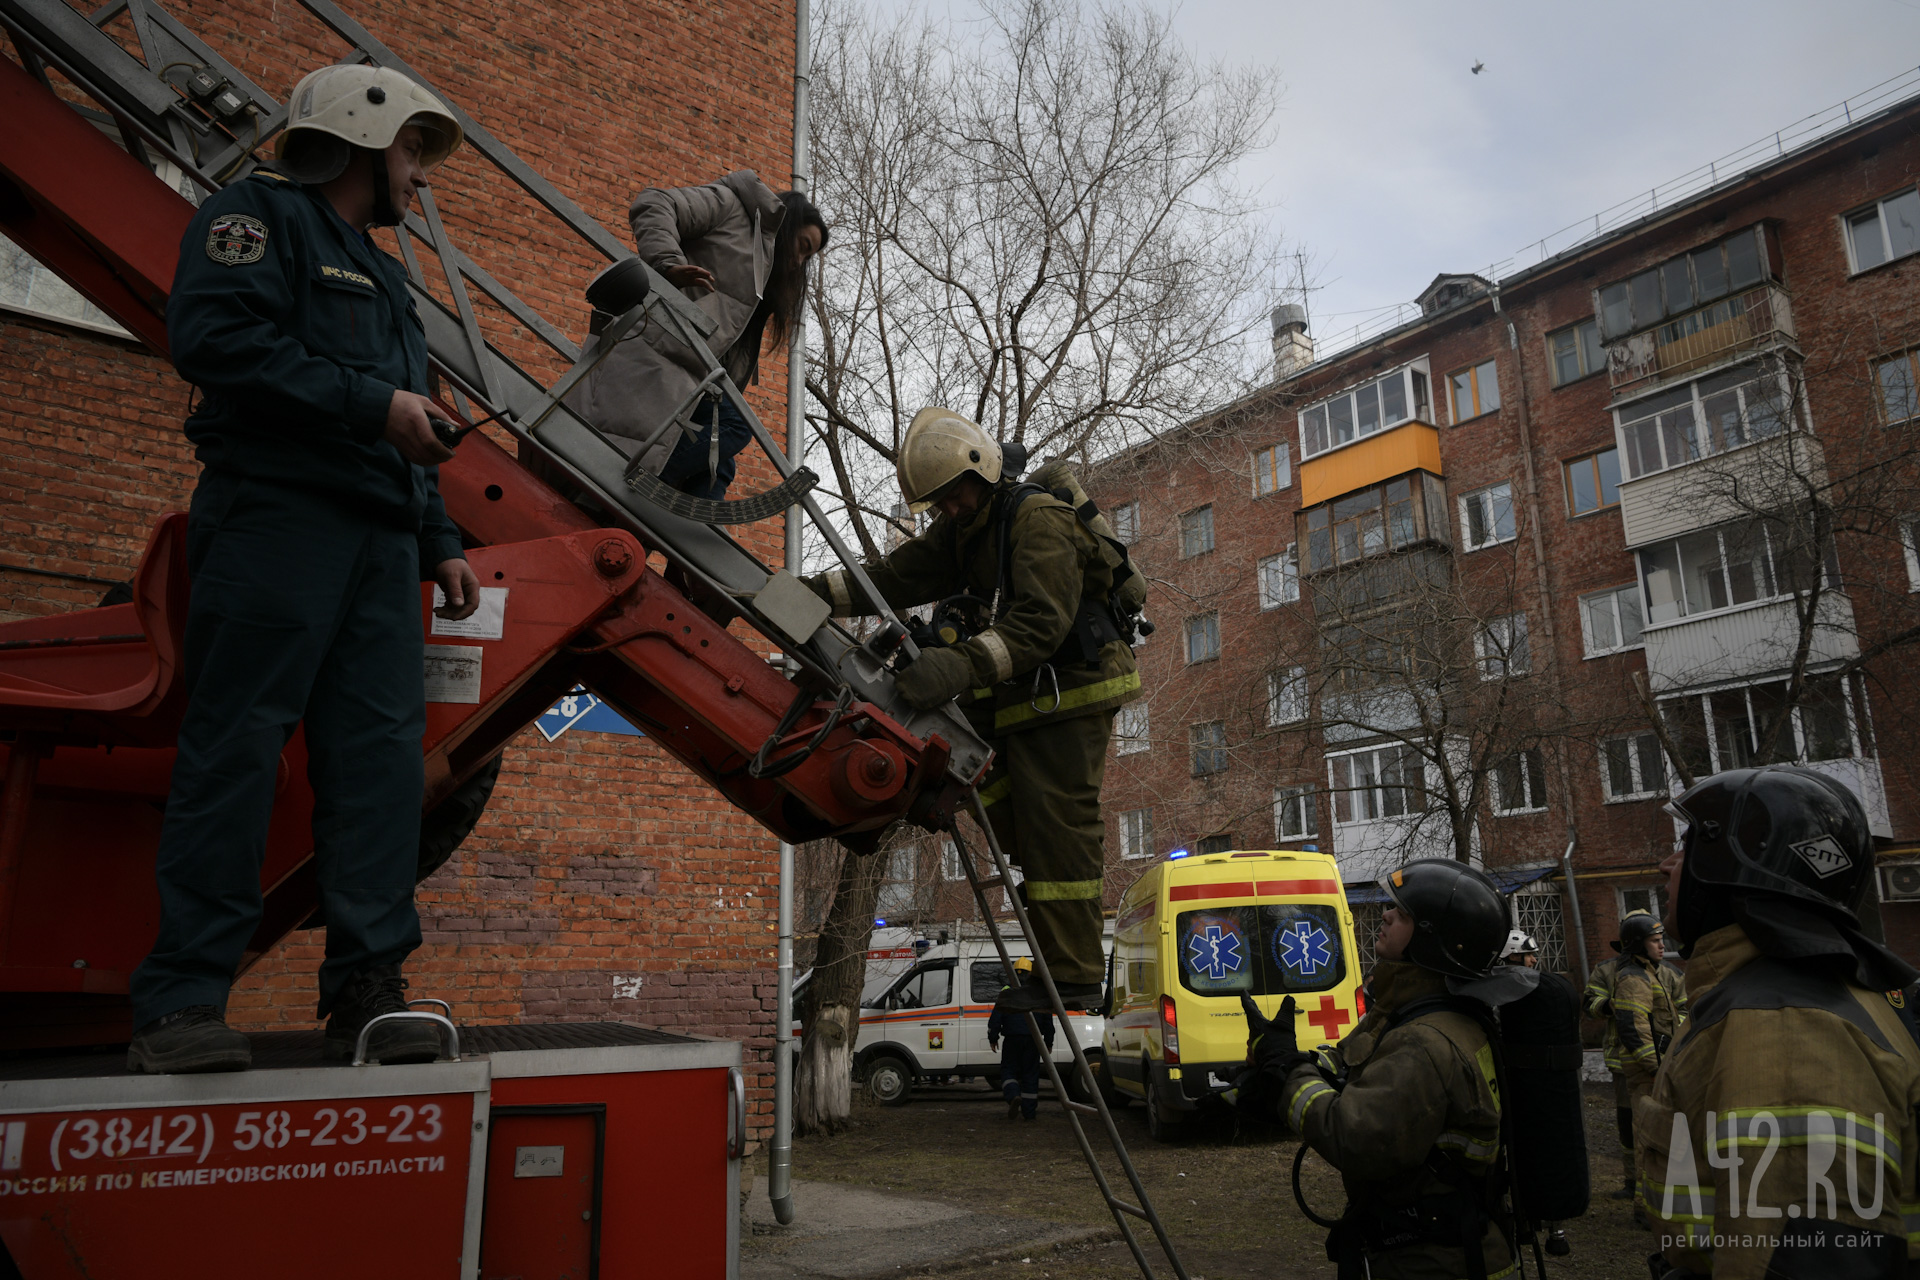 Пожарные спасли людей из горящего многоквартирного дома в Кузбассе